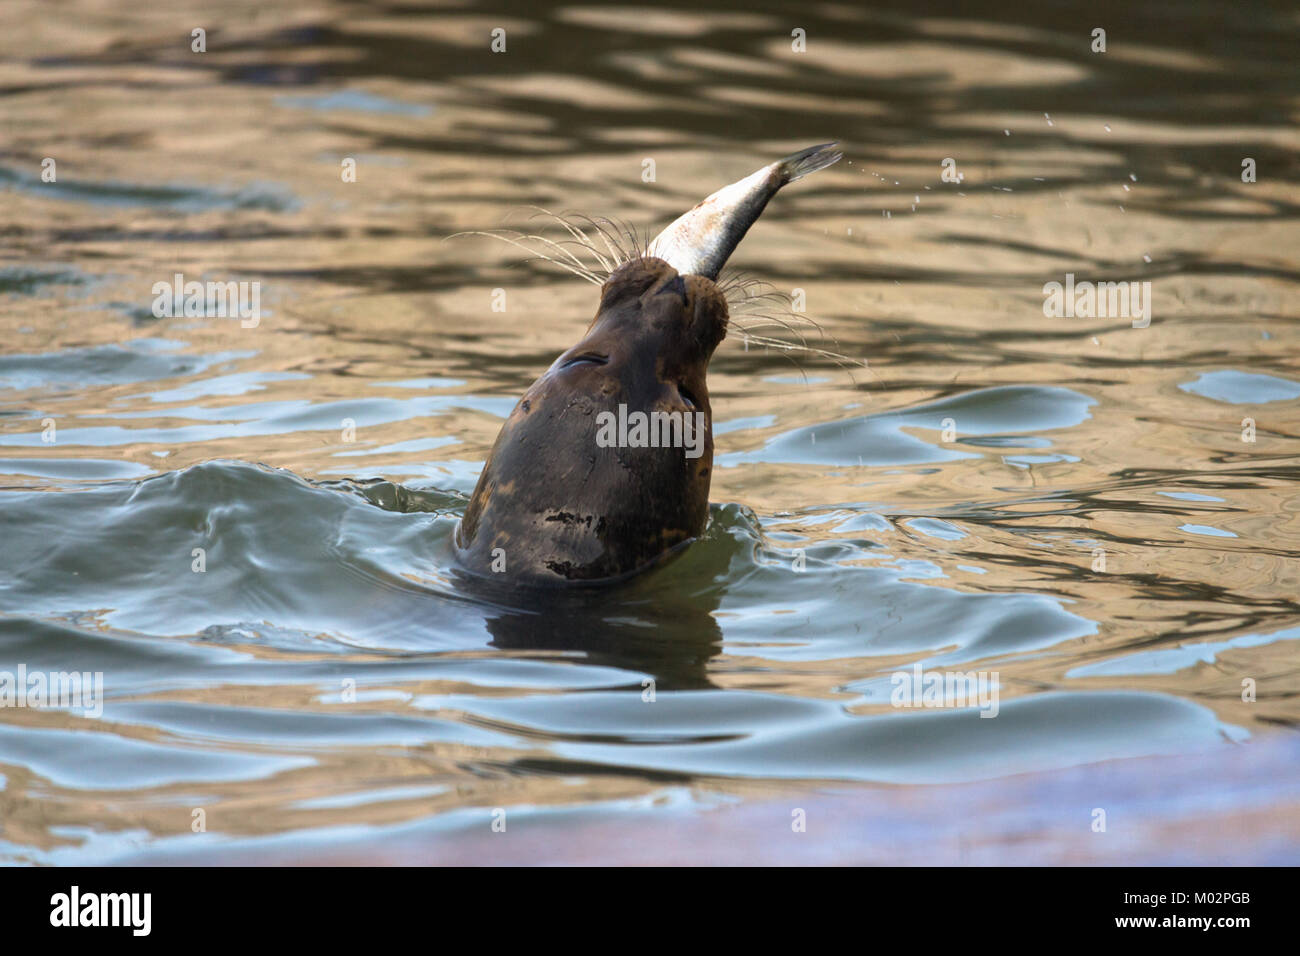 Dichtung der Verzehr von Fisch in Wasser - Gemeinsame Dichtung stossen oben auf seinen Kopf aus dem Wasser in der Nähe der Wasser essen ein Fisch in Hunstanton, Großbritannien Stockfoto